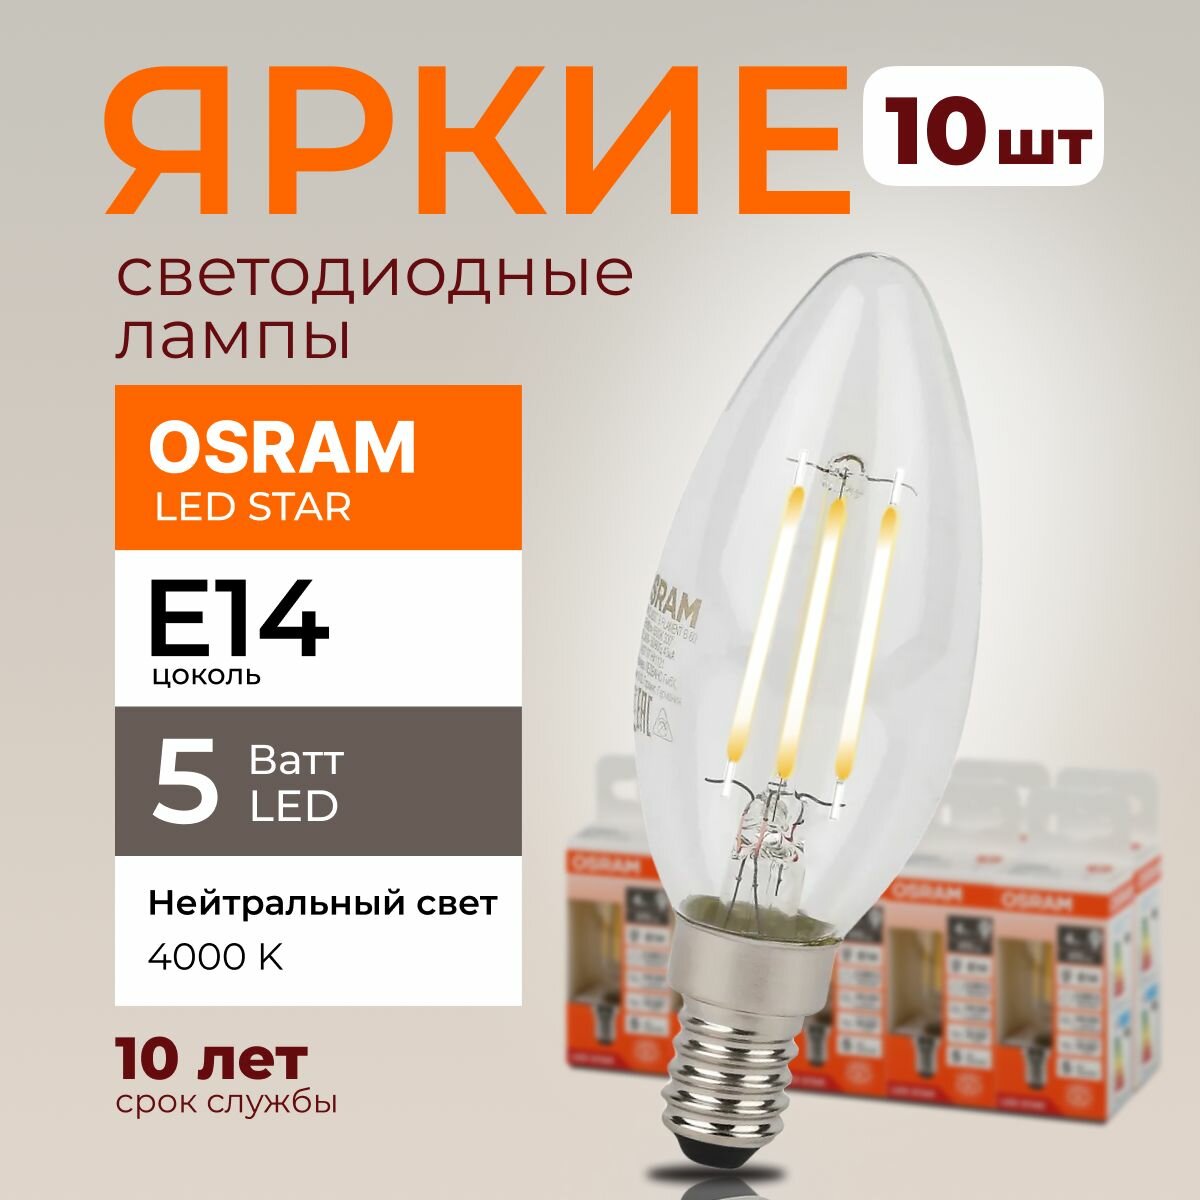 Светодиодная лампочка OSRAM E14 5 Ватт 4000К филаментная нейтральный белый свет CL свеча 220-240V LED 840, 5W, 600lm, набор 10шт.